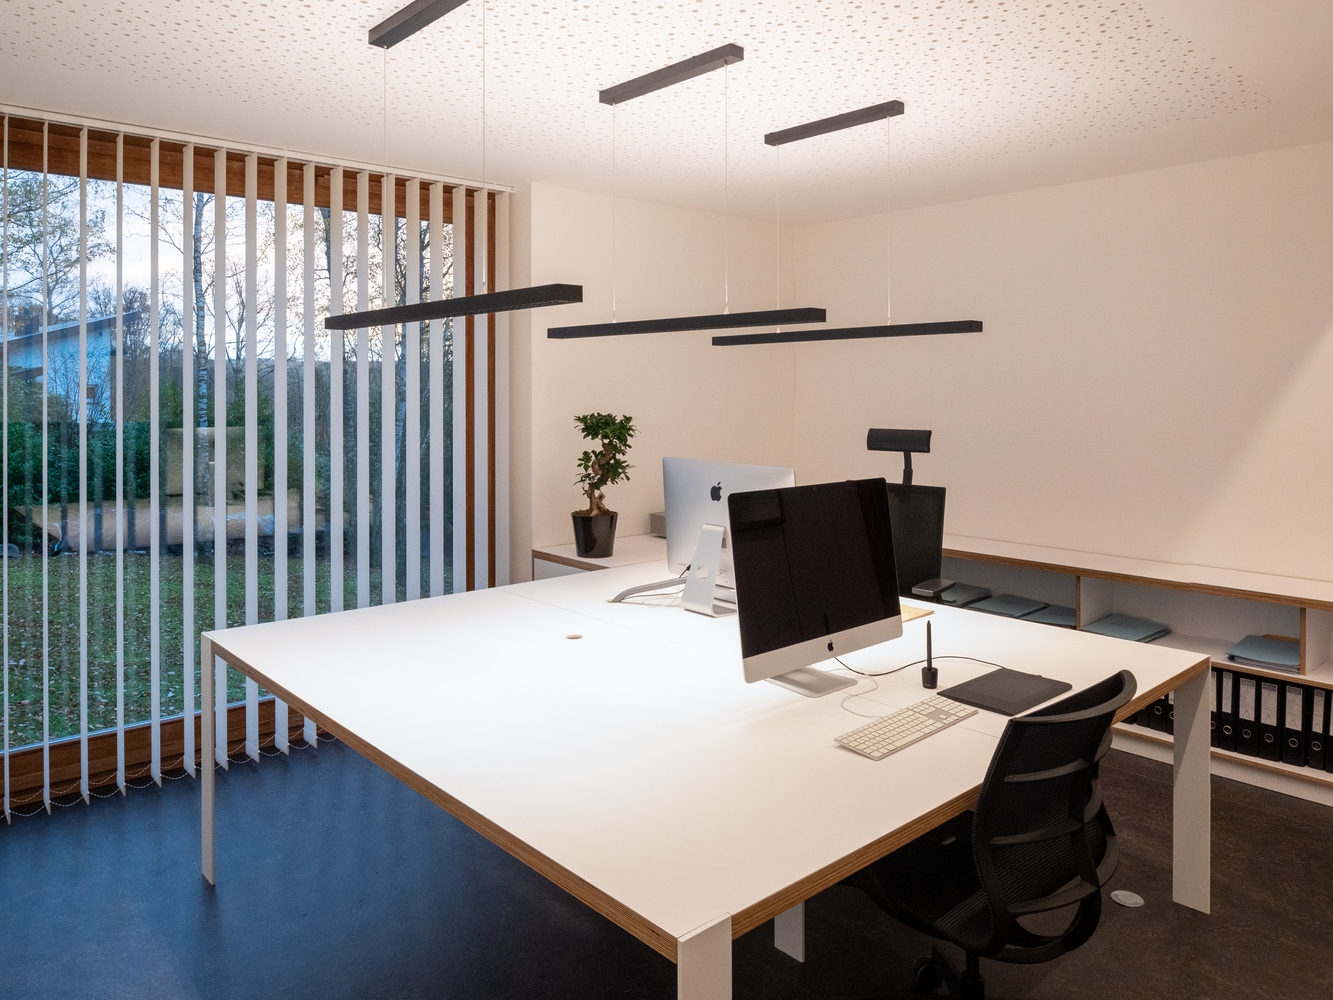 Không gian bên trong văn phòng có thiết kế hiện đại, tinh tế với khung cửa mở rộng mang đến tầm nhìn thoáng đẹp.